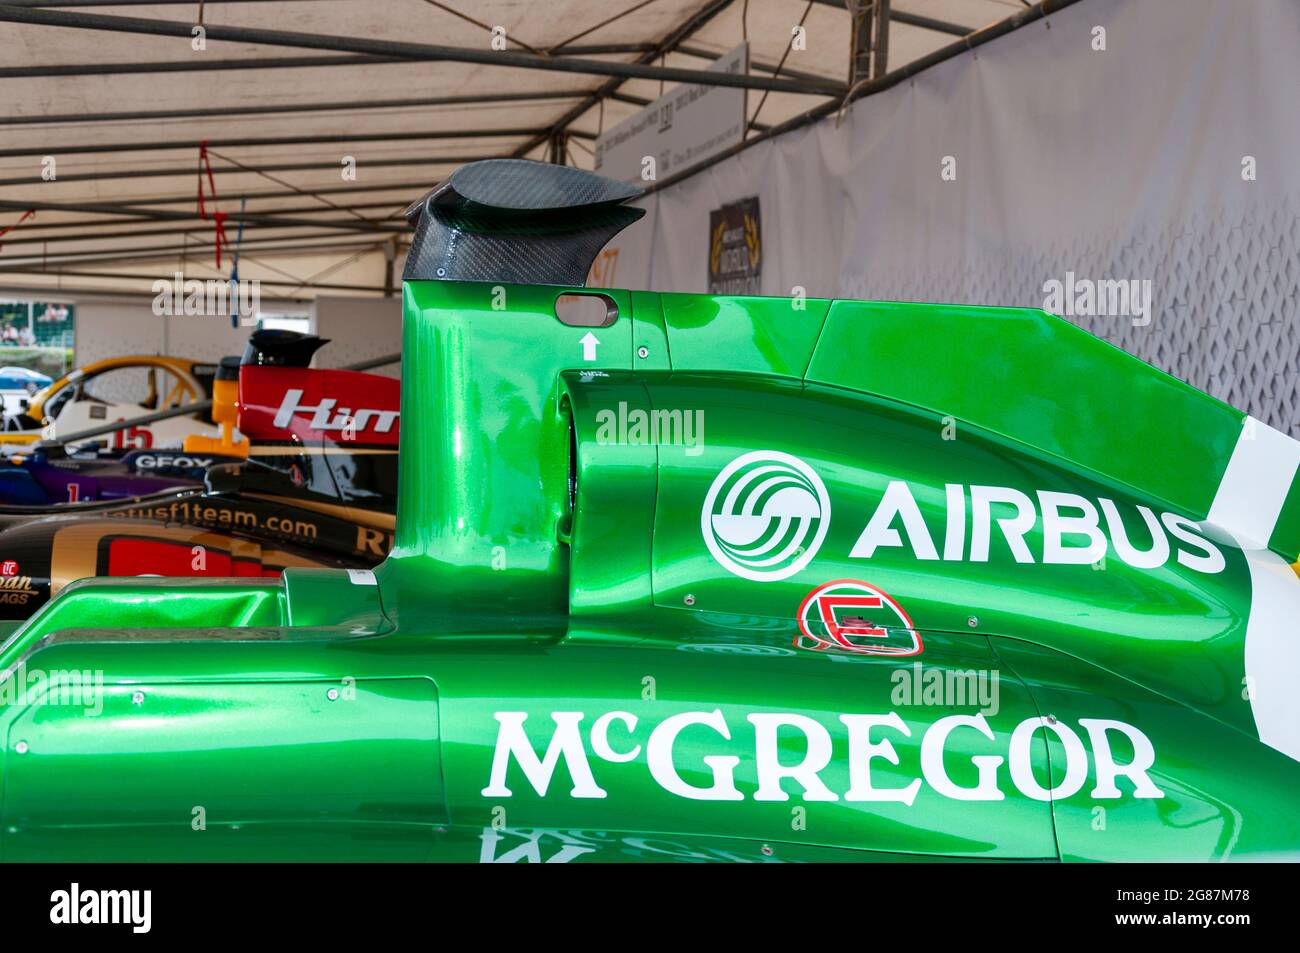 Lufteinlass eines Caterham CT03 Formel-1-Grand-Prix-Rennwagens beim Goodwood Festival of Speed 2013 mit dem Sponsor Airbus, McGregor, auf der grünen Karosserie Stockfoto